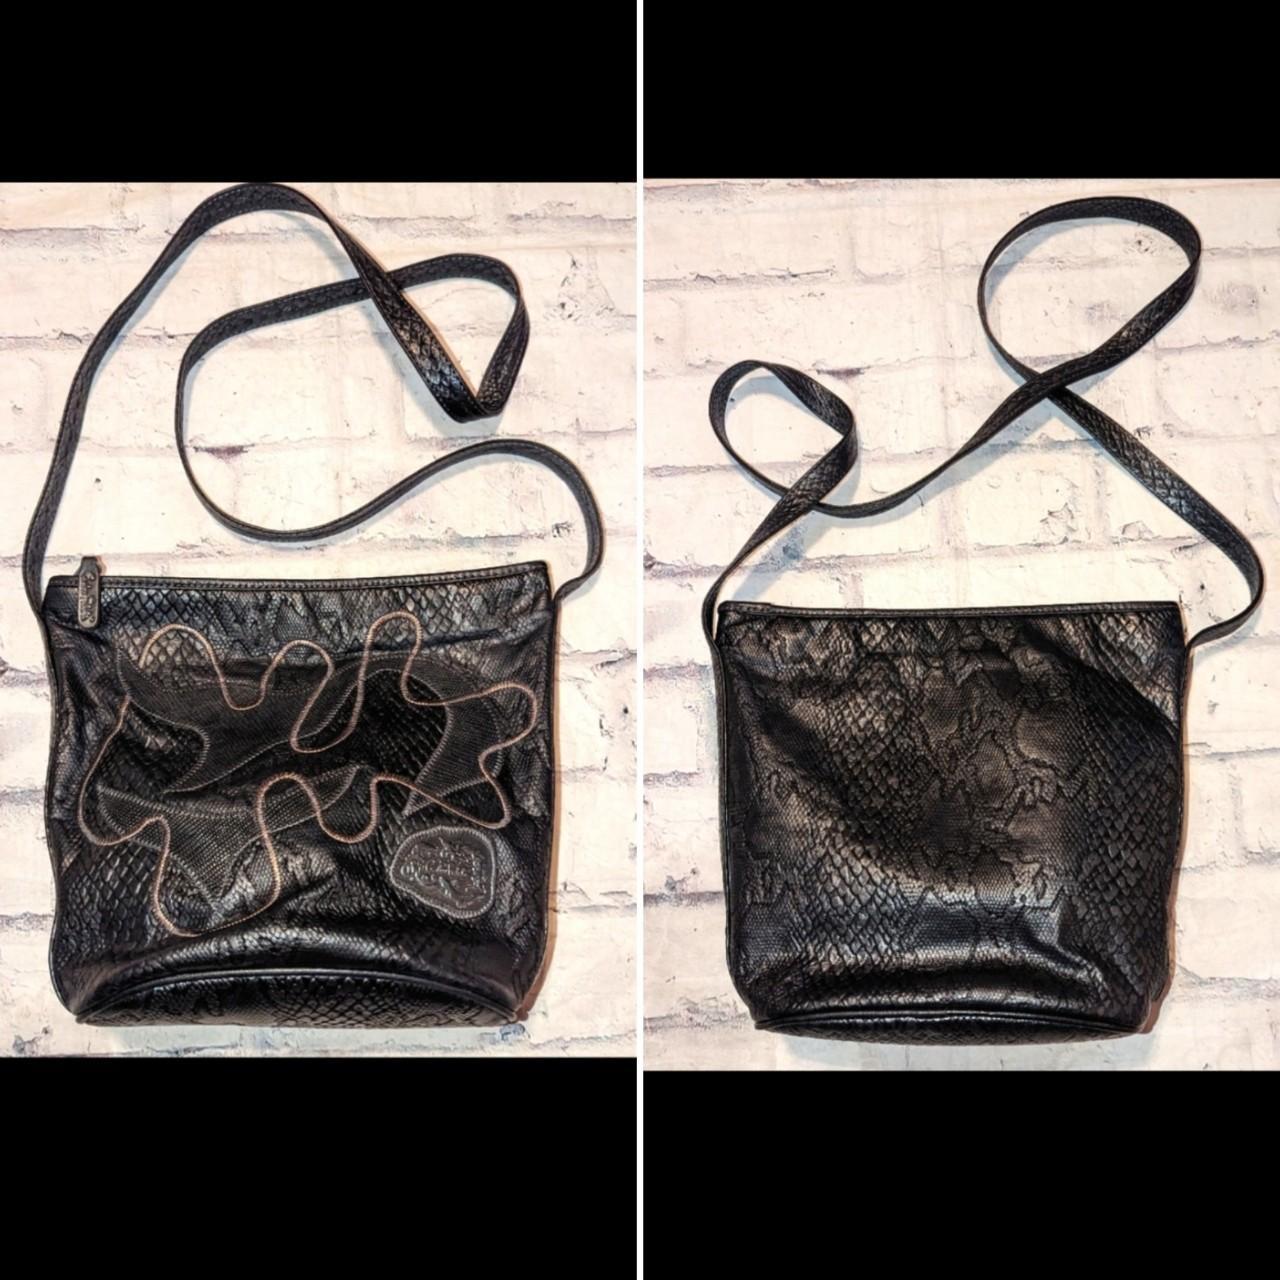 Snake Skin Embossed Leather Handbag Vintage Leather Handbag 